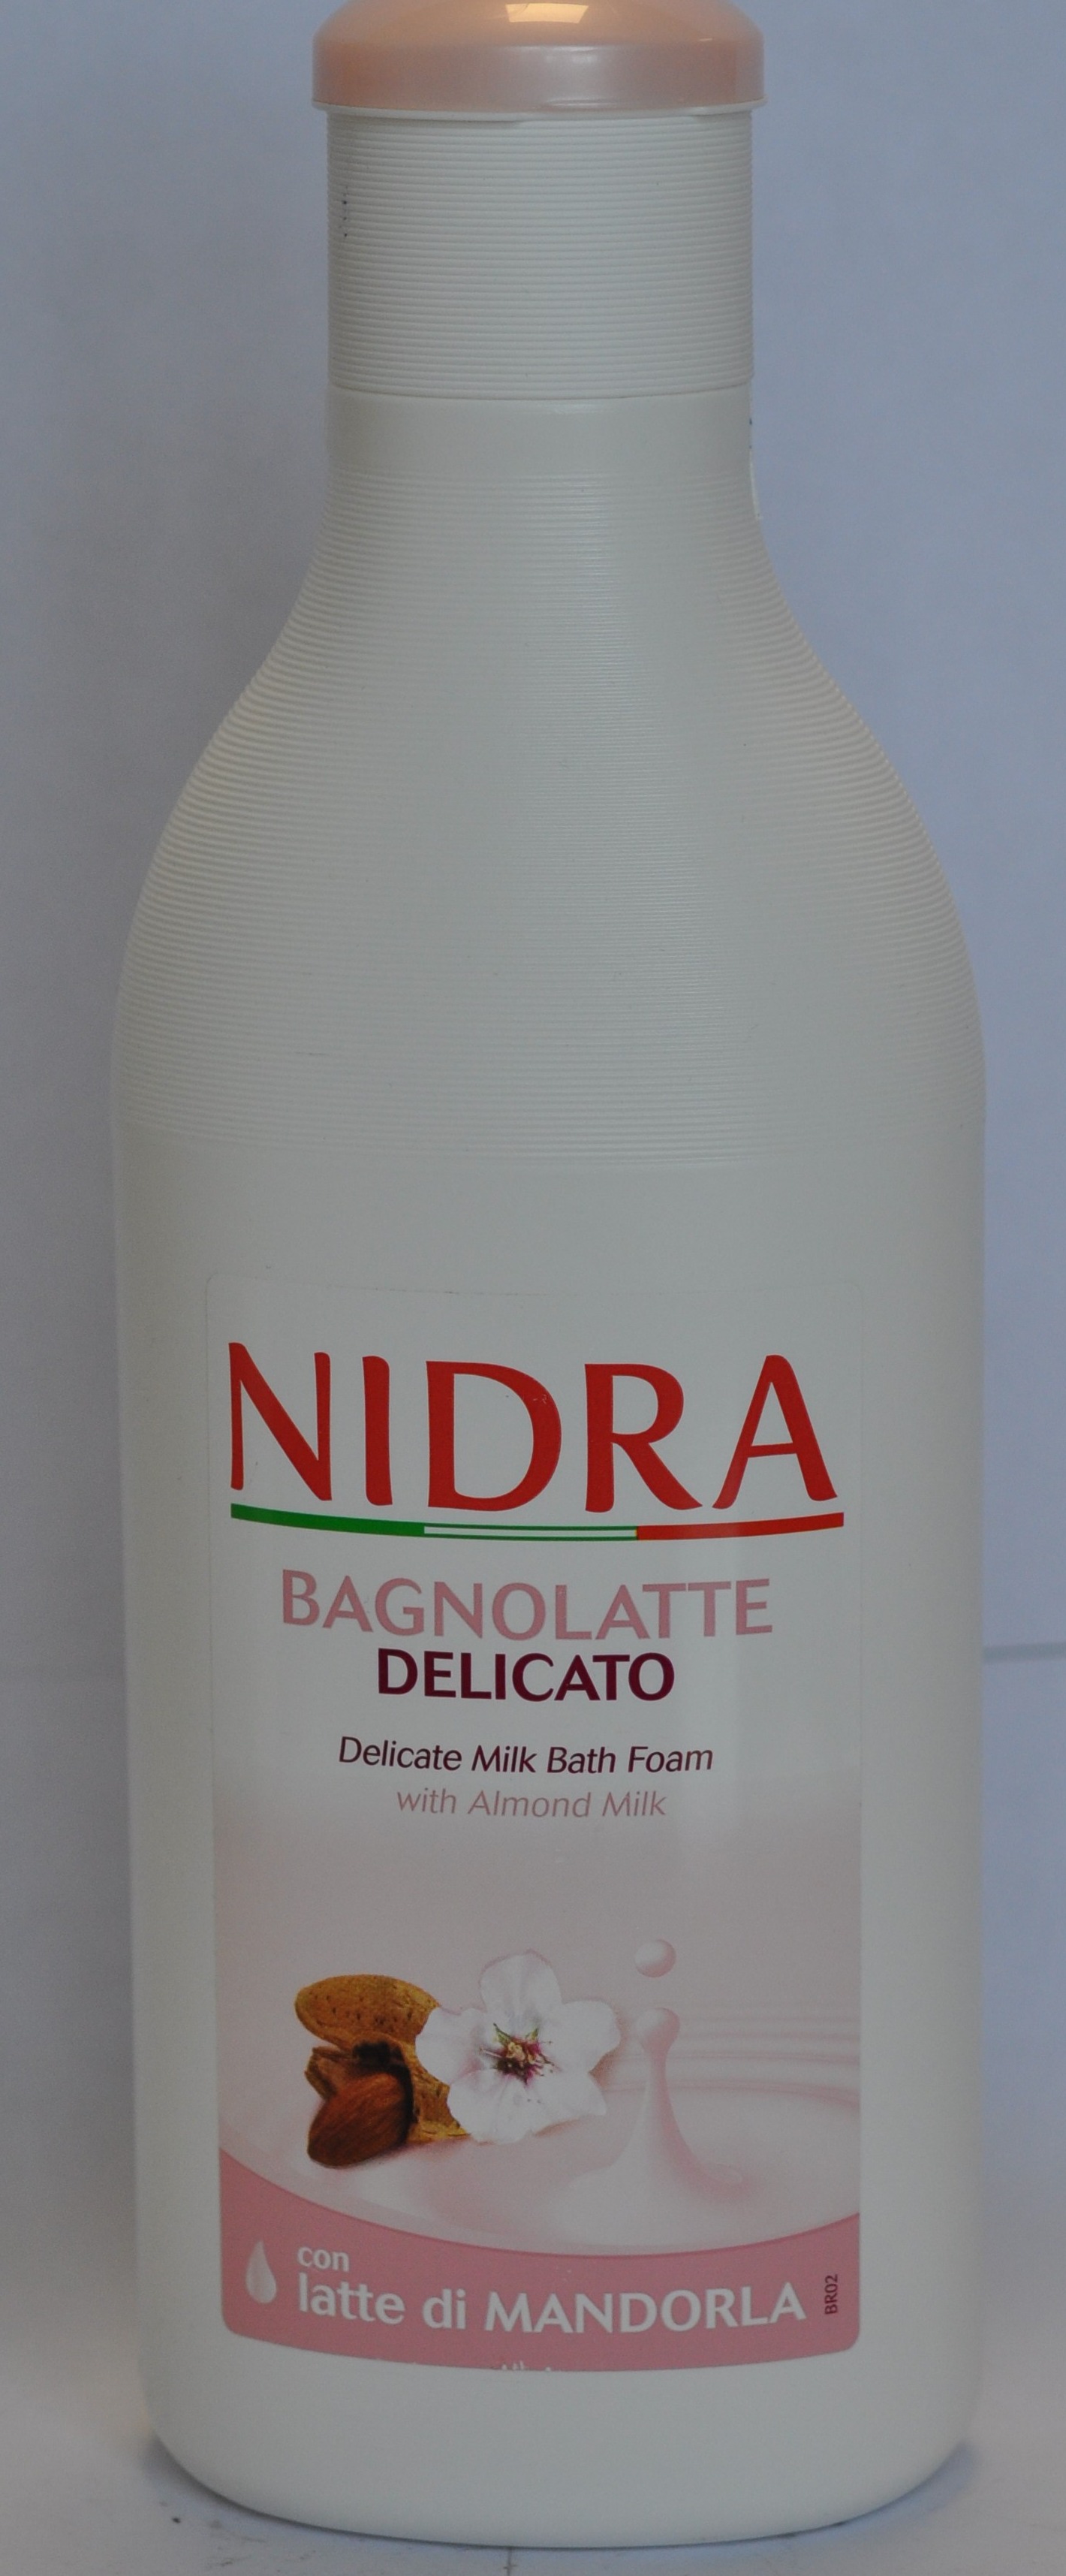 Bagno latte delicato – pena do kúpeľa - foto výrobku